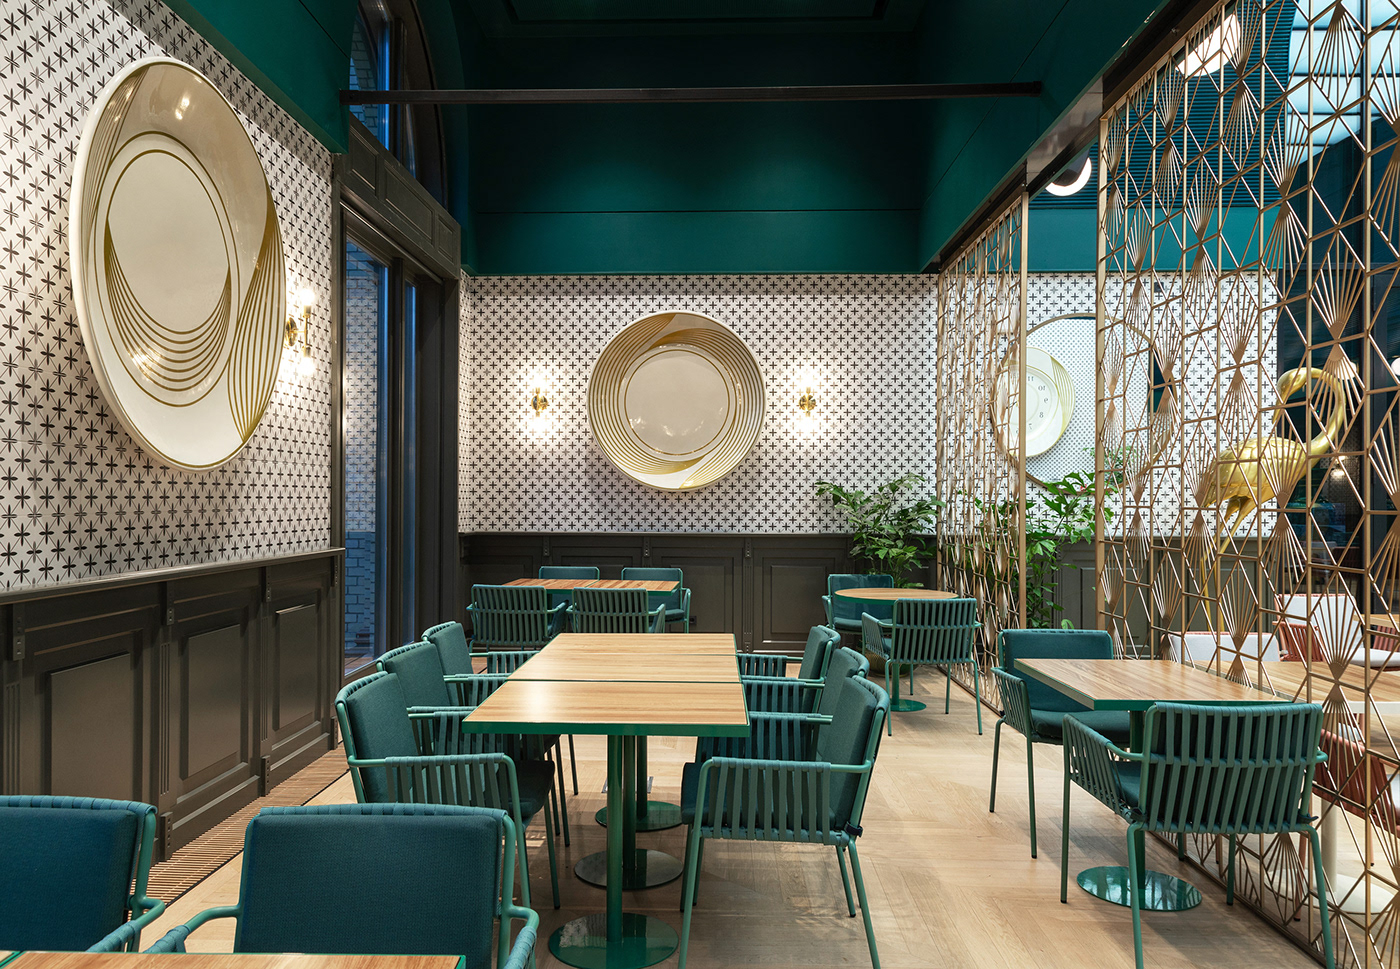 restaurant interior cafe interior Grand Cafe art nouveau Deep green interior Zsolnay